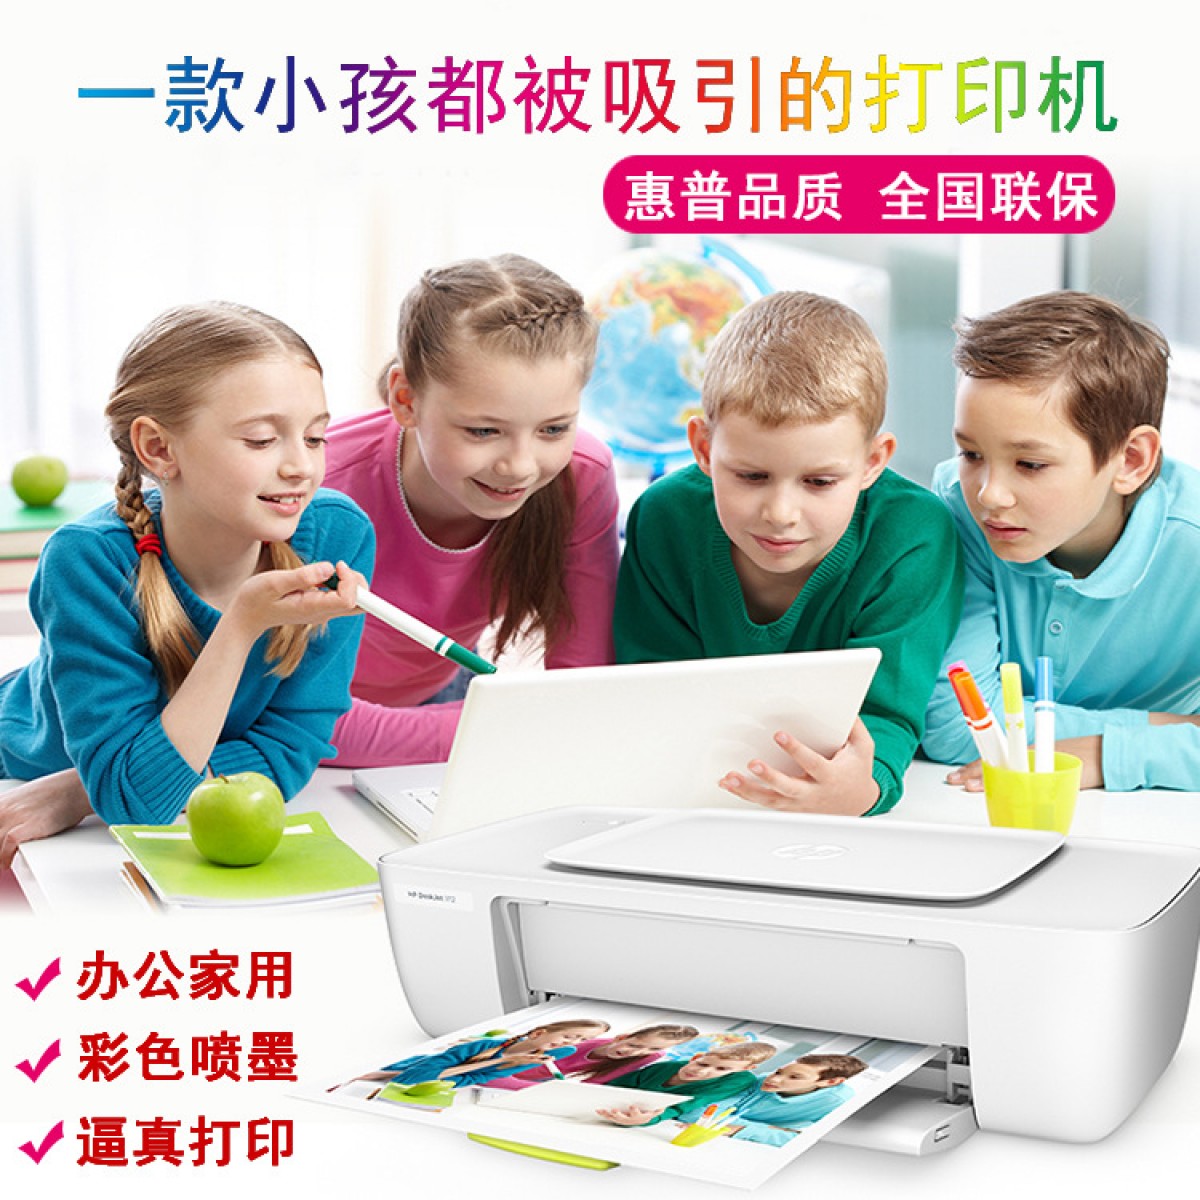 原装惠普1112彩色喷墨打印机HP小型学生作业家用照片打印机